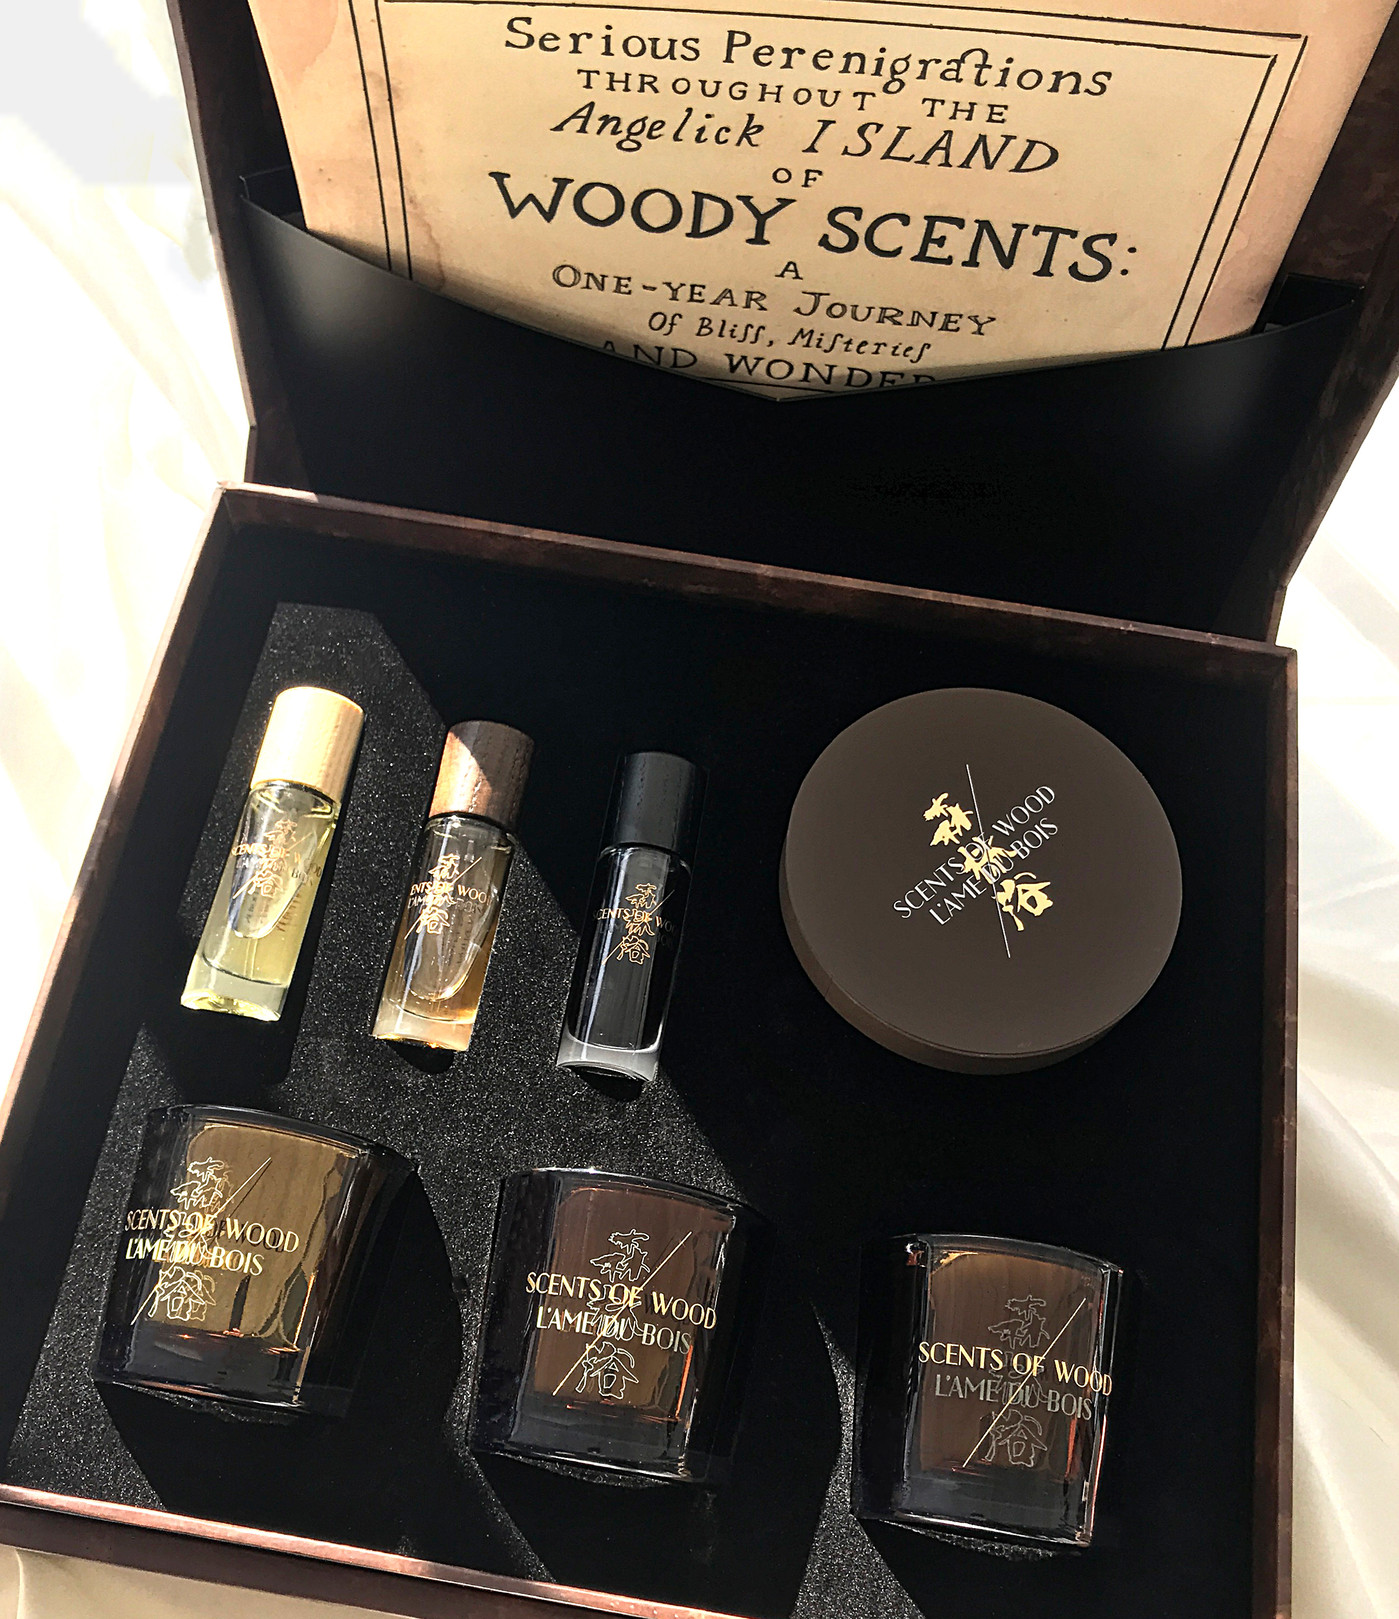 Louis Vuitton Miniature Set For Men Eau De Parfum Unboxing